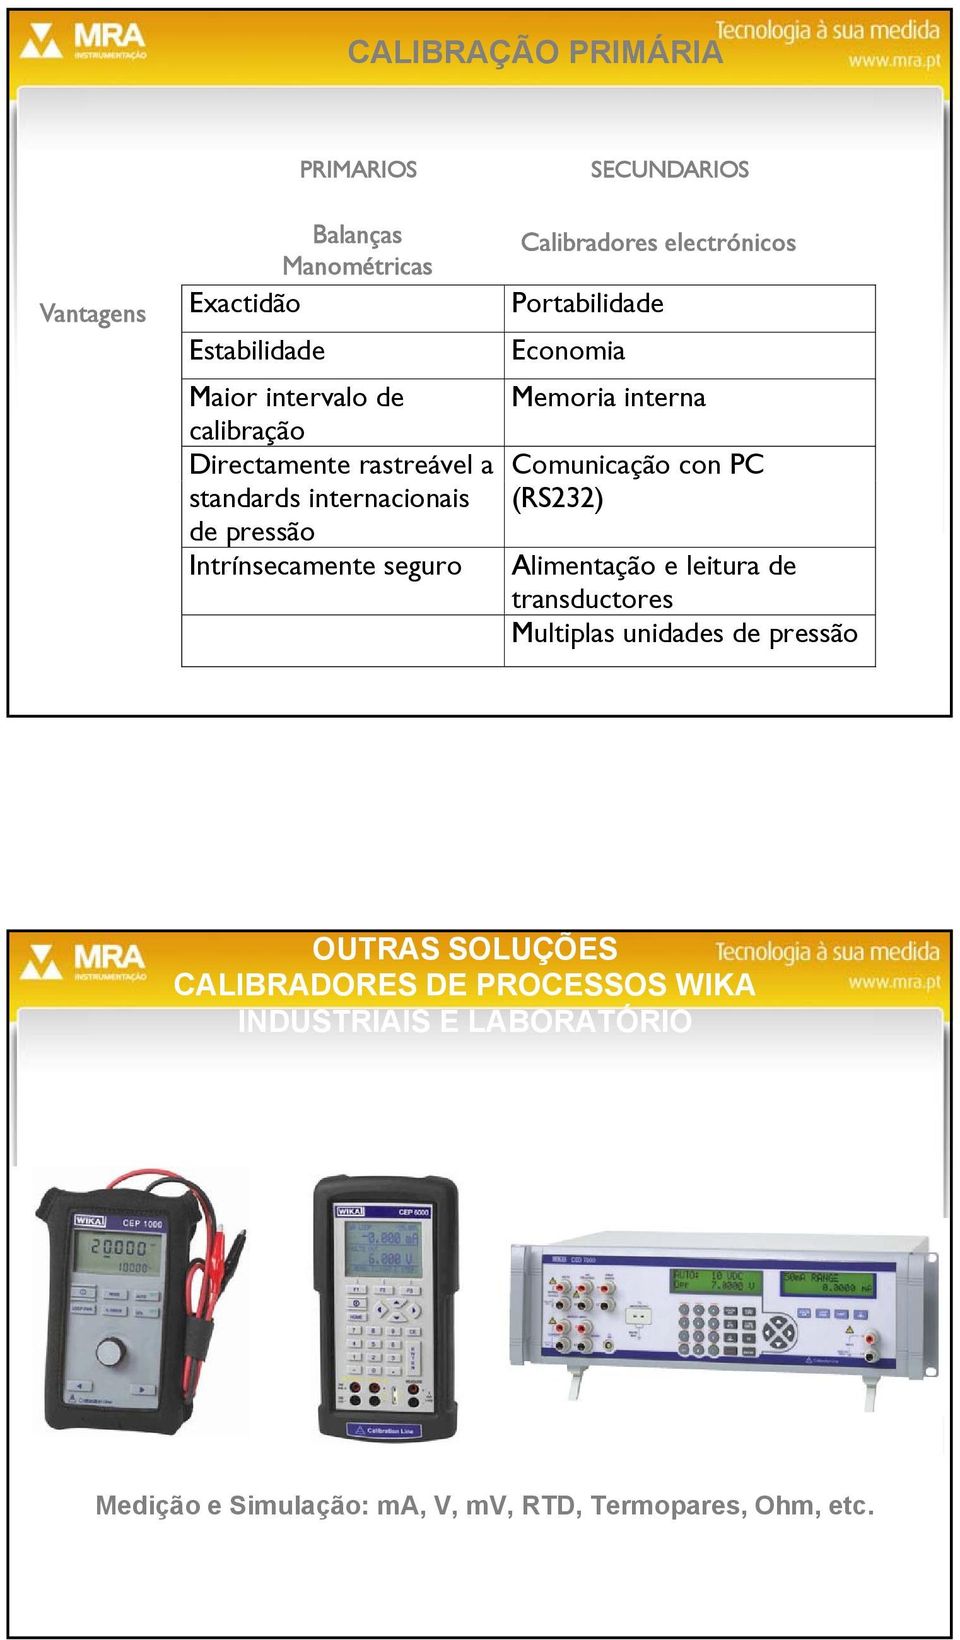 internacionais (RS232) de pressão Intrínsecamente seguro Alimentação e leitura de transductores Multiplas unidades de pressão